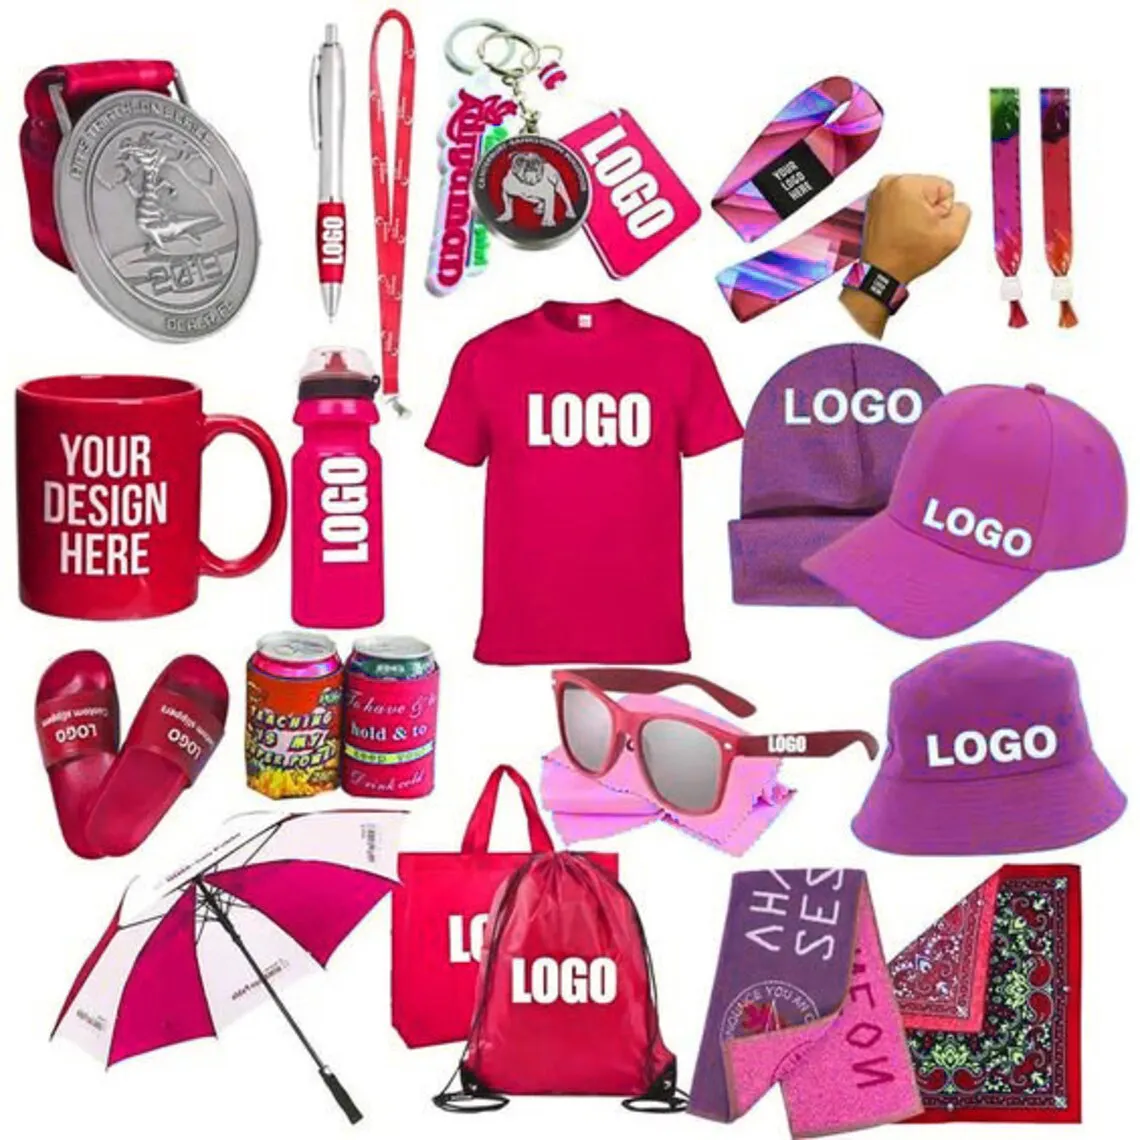 Özelleştirilmiş reklam karşılama hediyeler Set yenilik iş hediye pazarlama promosyon hediyeler öğeleri ile Logo